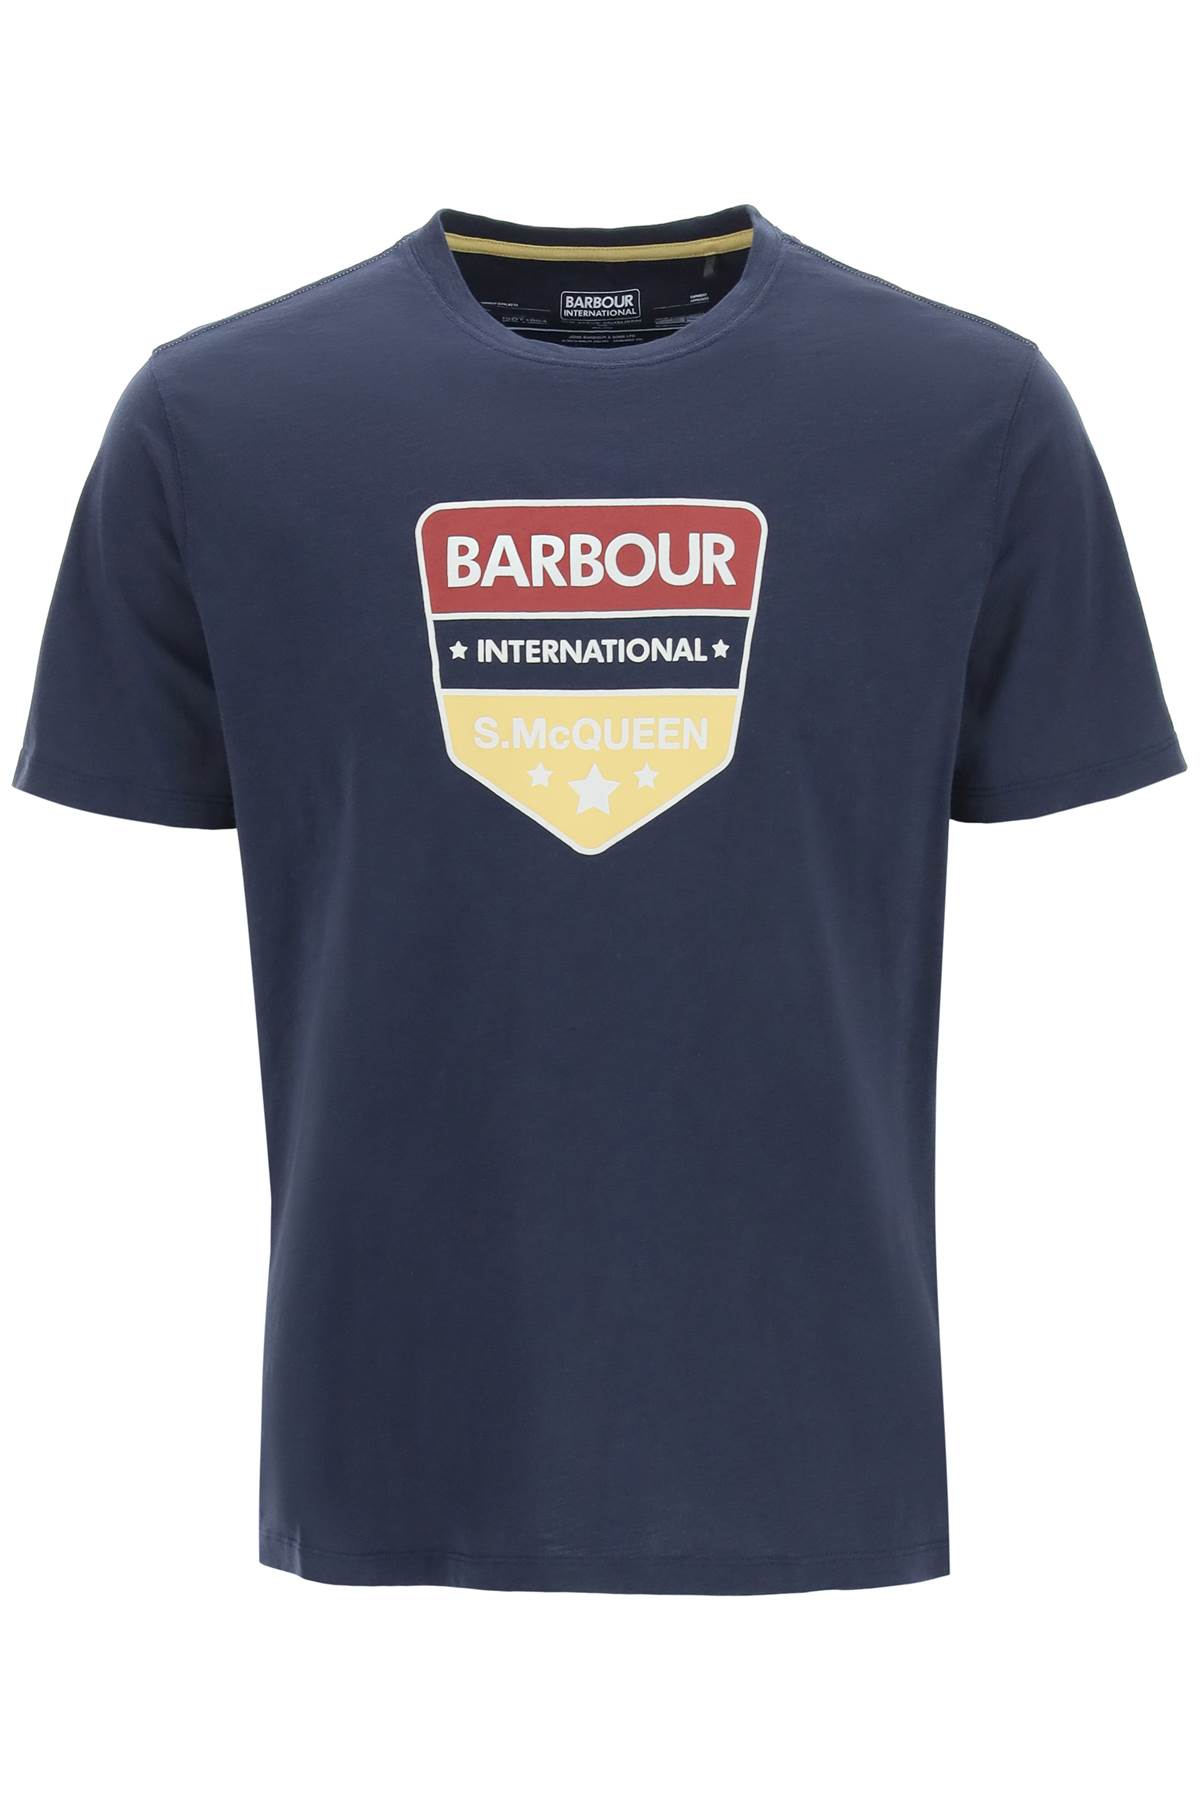 Barbour Benning Steve Mcqueen T-shirt